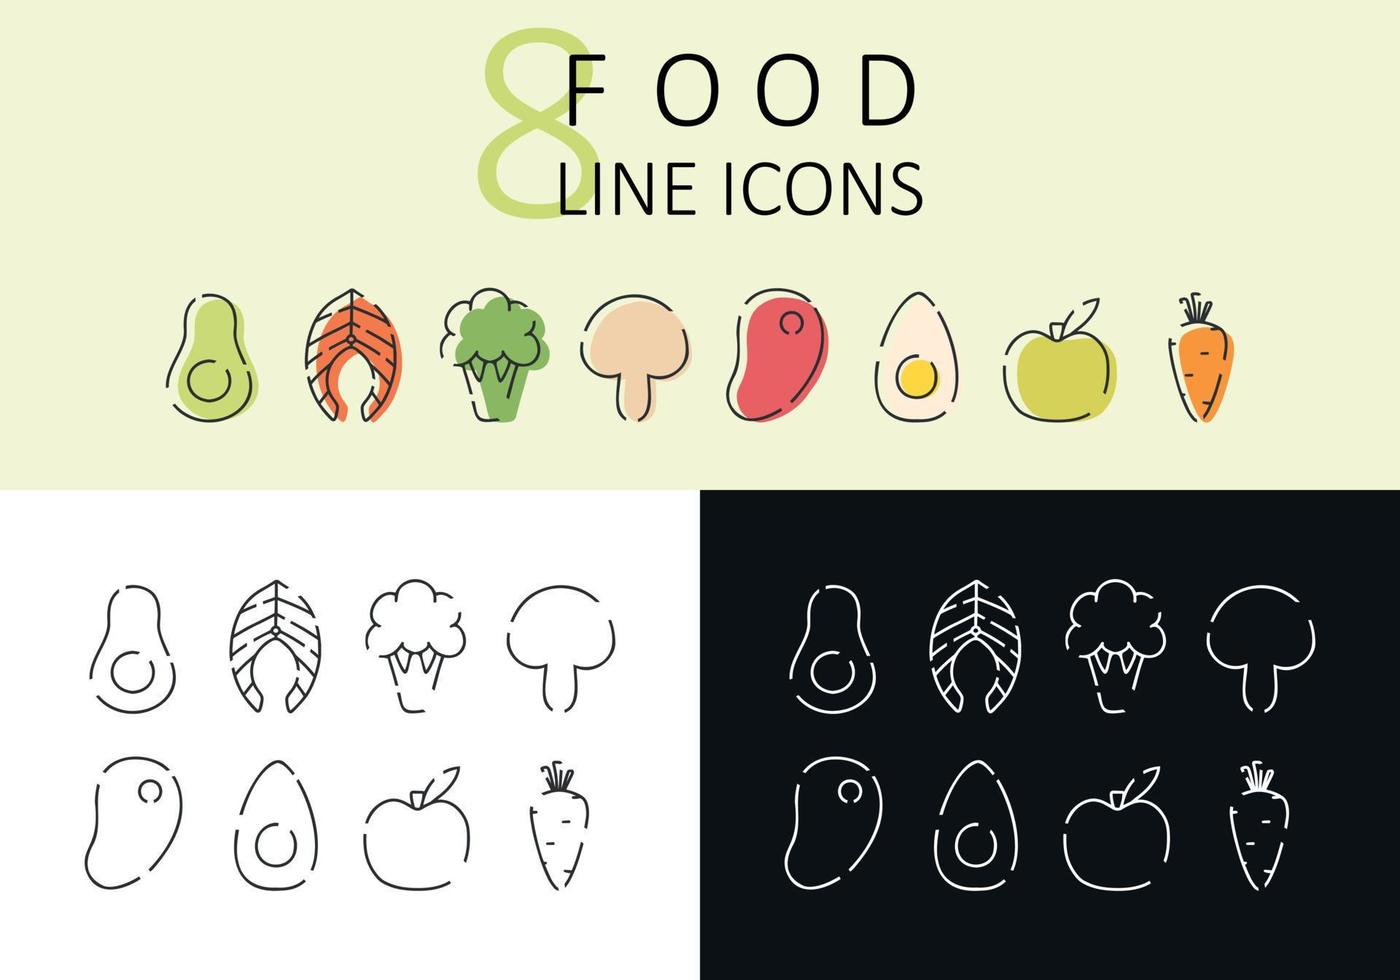 reeks van lineair pictogrammen van gezond voedsel. modern pictogrammen van gepast voeding. vector illustratie. verzameling van lineair avocado, Zalm, steak, appel, ei, wortel.